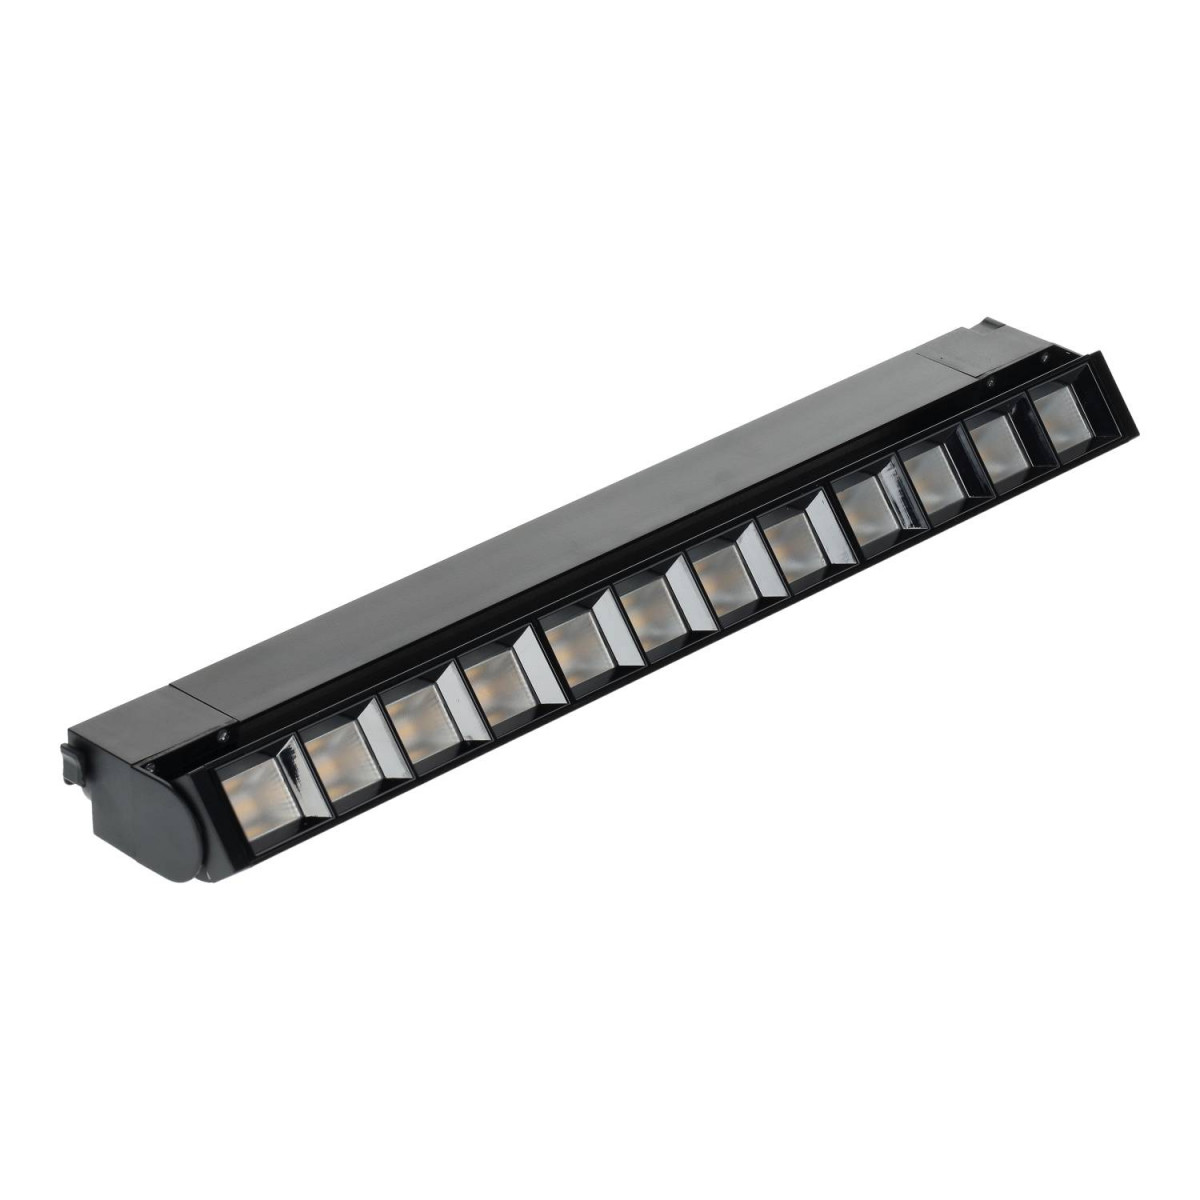 Projetor LED de calha linear 36W preto ajustável